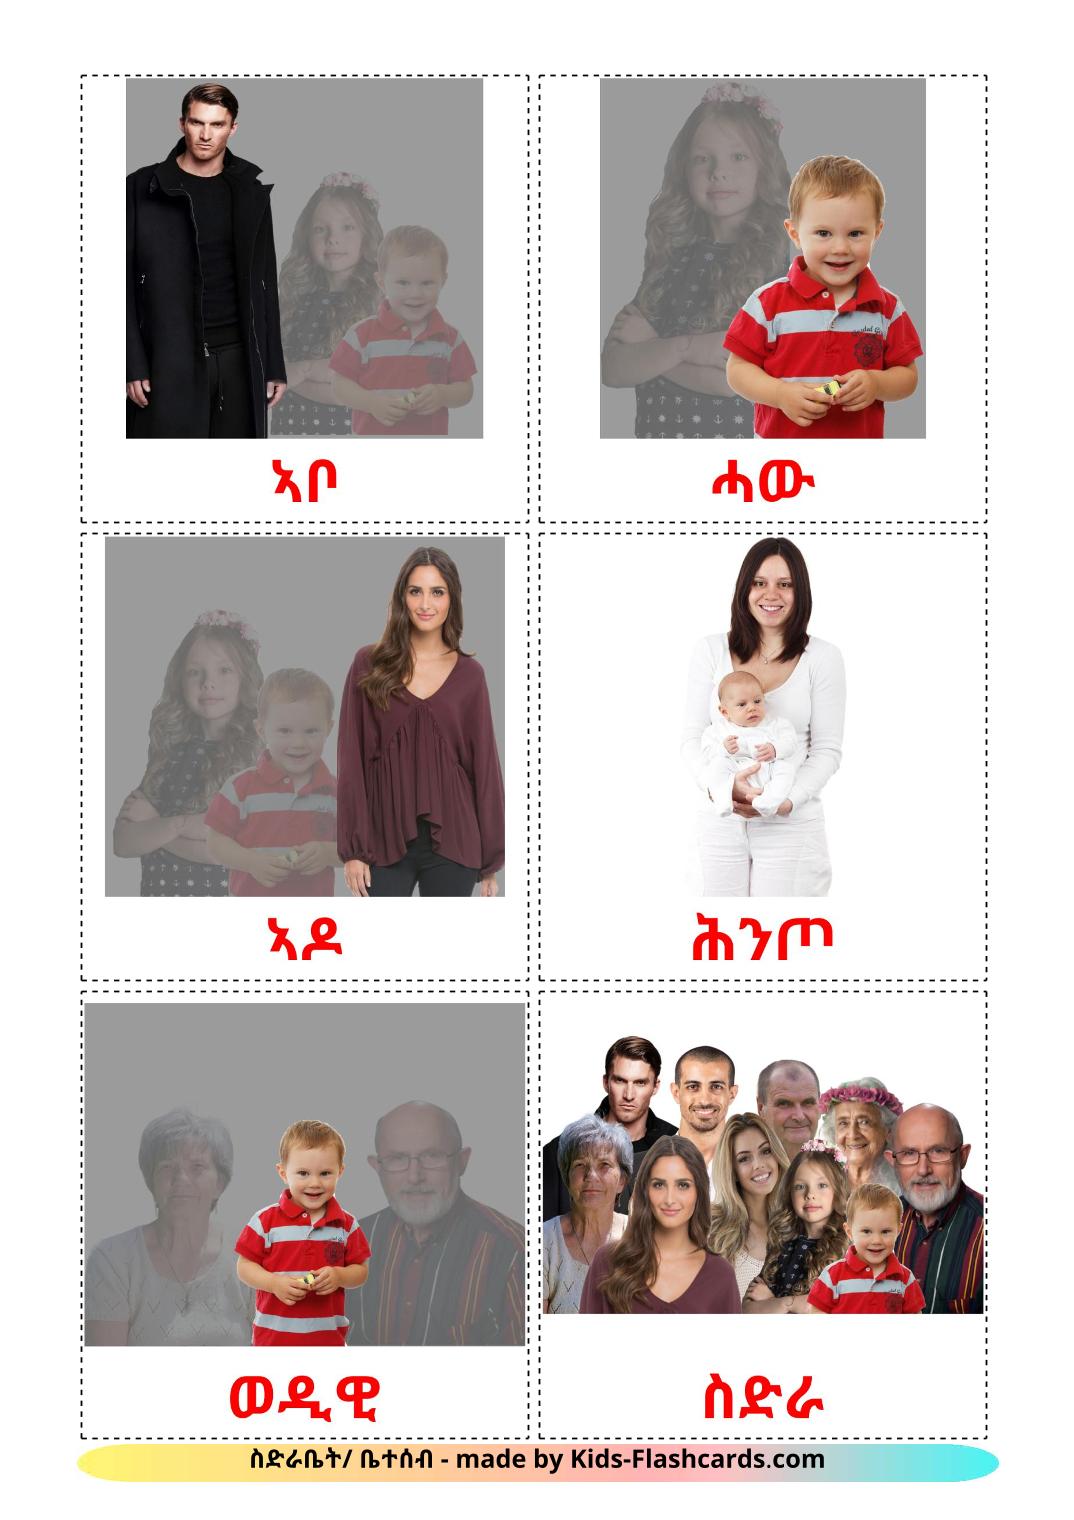 Membros da família - 32 Flashcards tigrignaes gratuitos para impressão